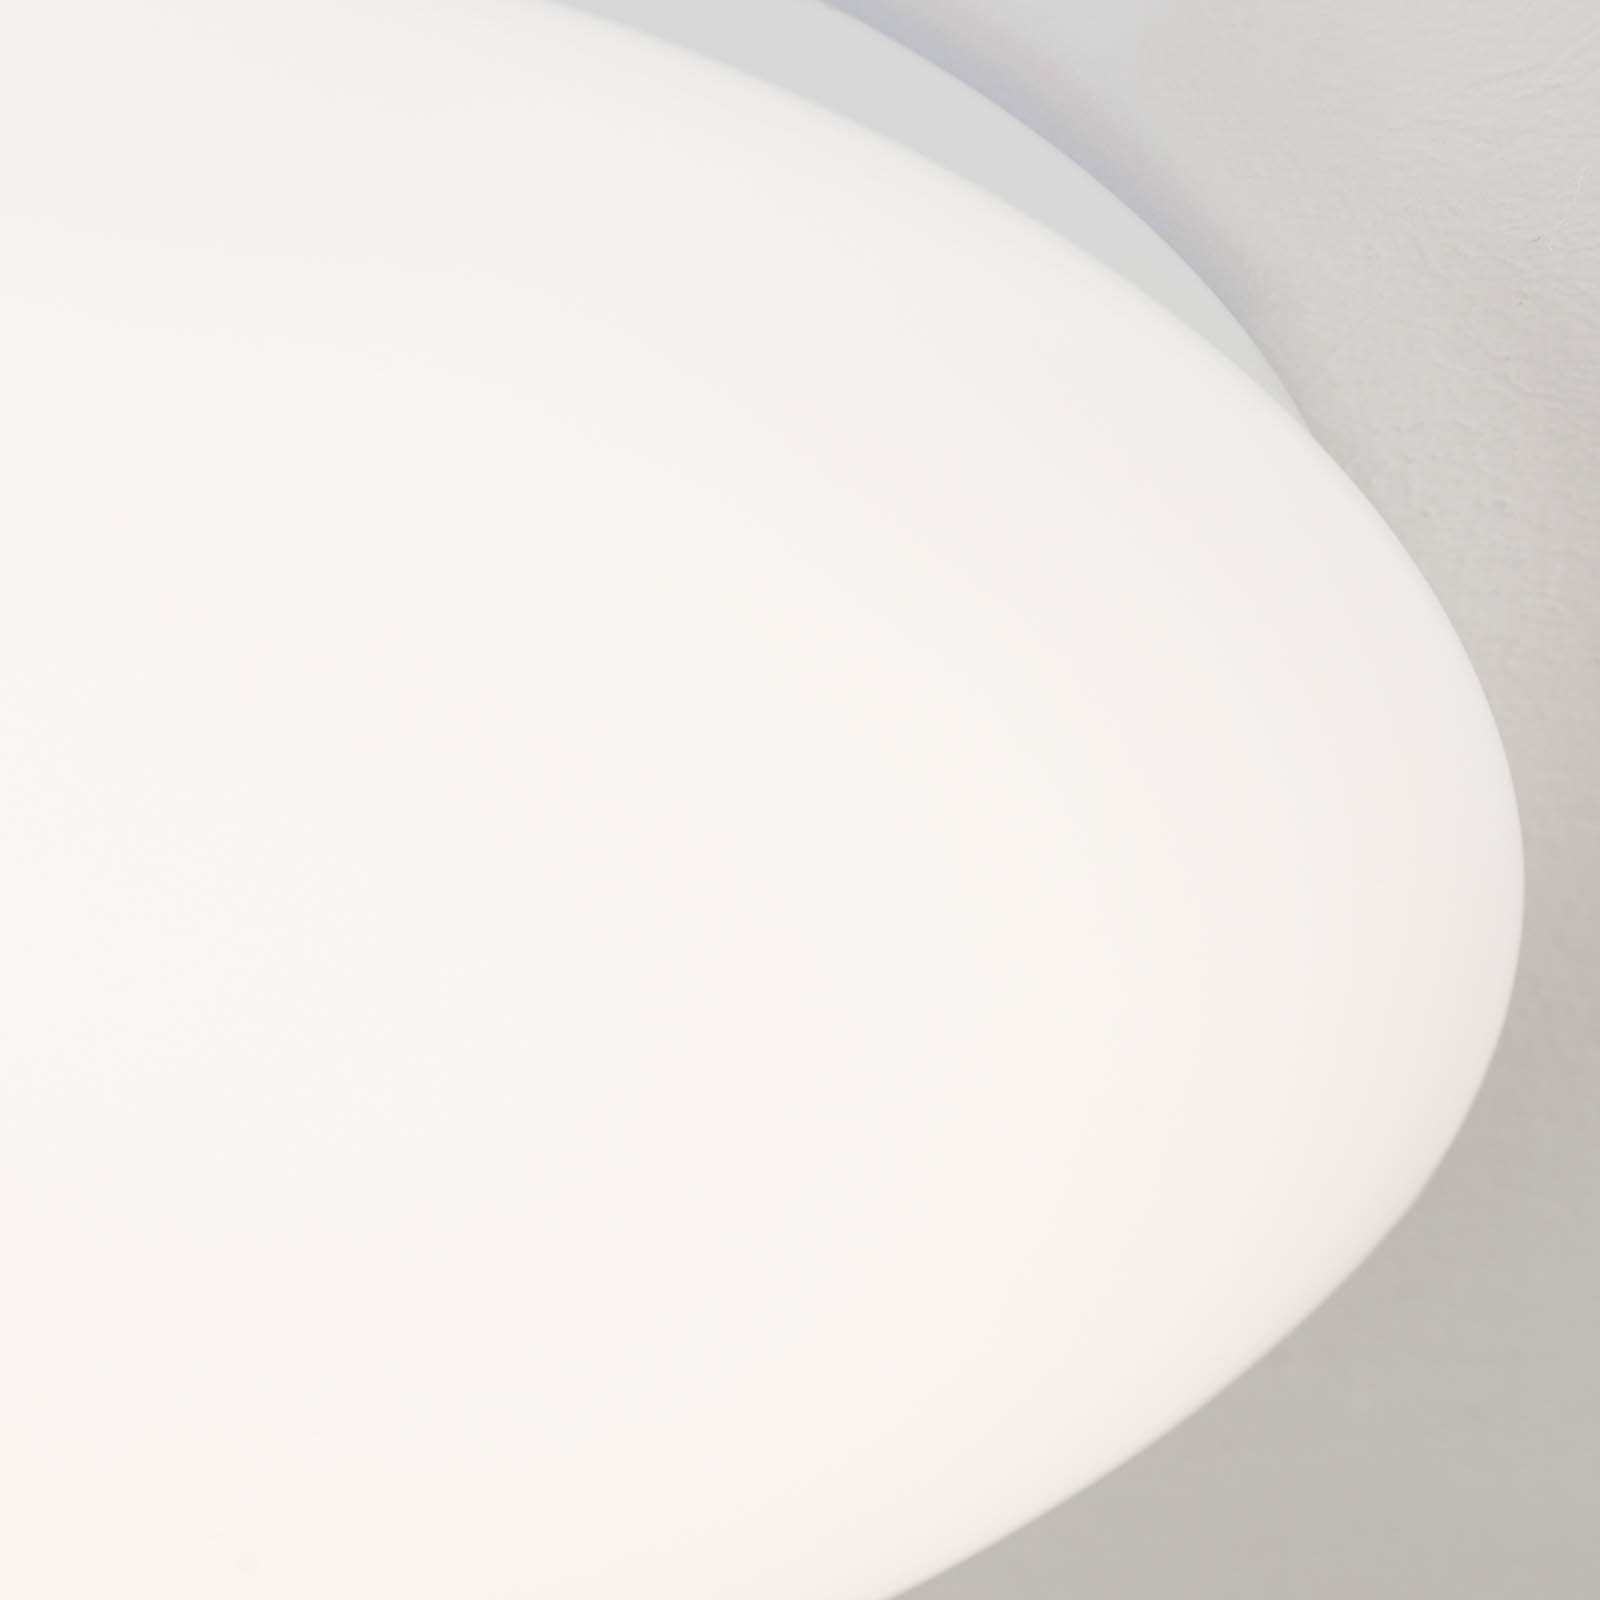 LED stropní svítidlo Nedo zakřivené, Ø 28,5 cm